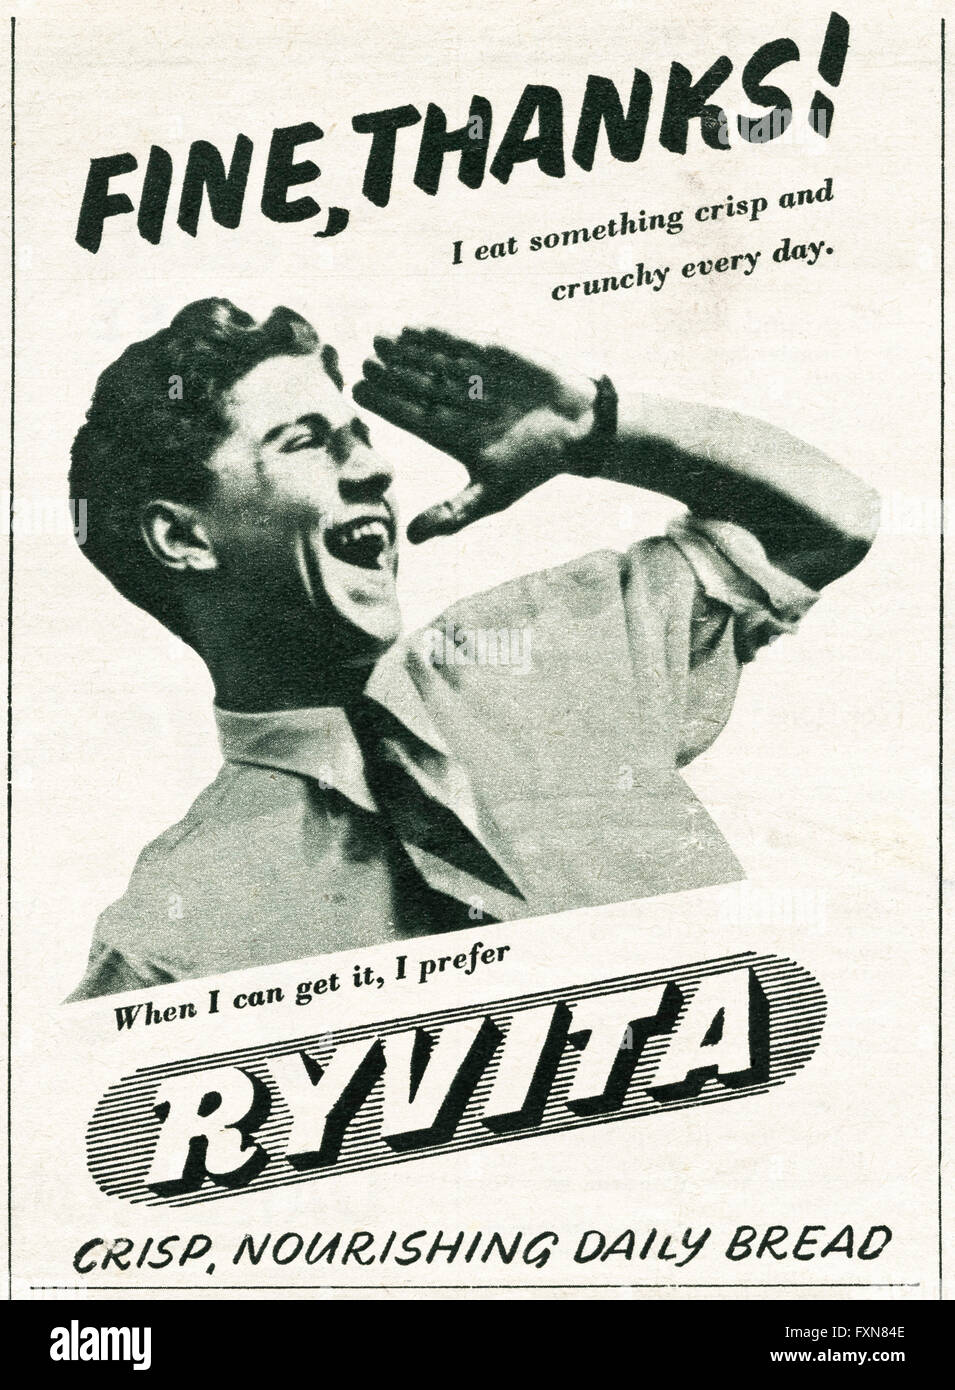 Originale vecchia vintage magazine annuncio pubblicitario dal WW2 periodo. Il tempo di guerra annuncio datato 1944 pubblicità Ryvita pane croccante Foto Stock